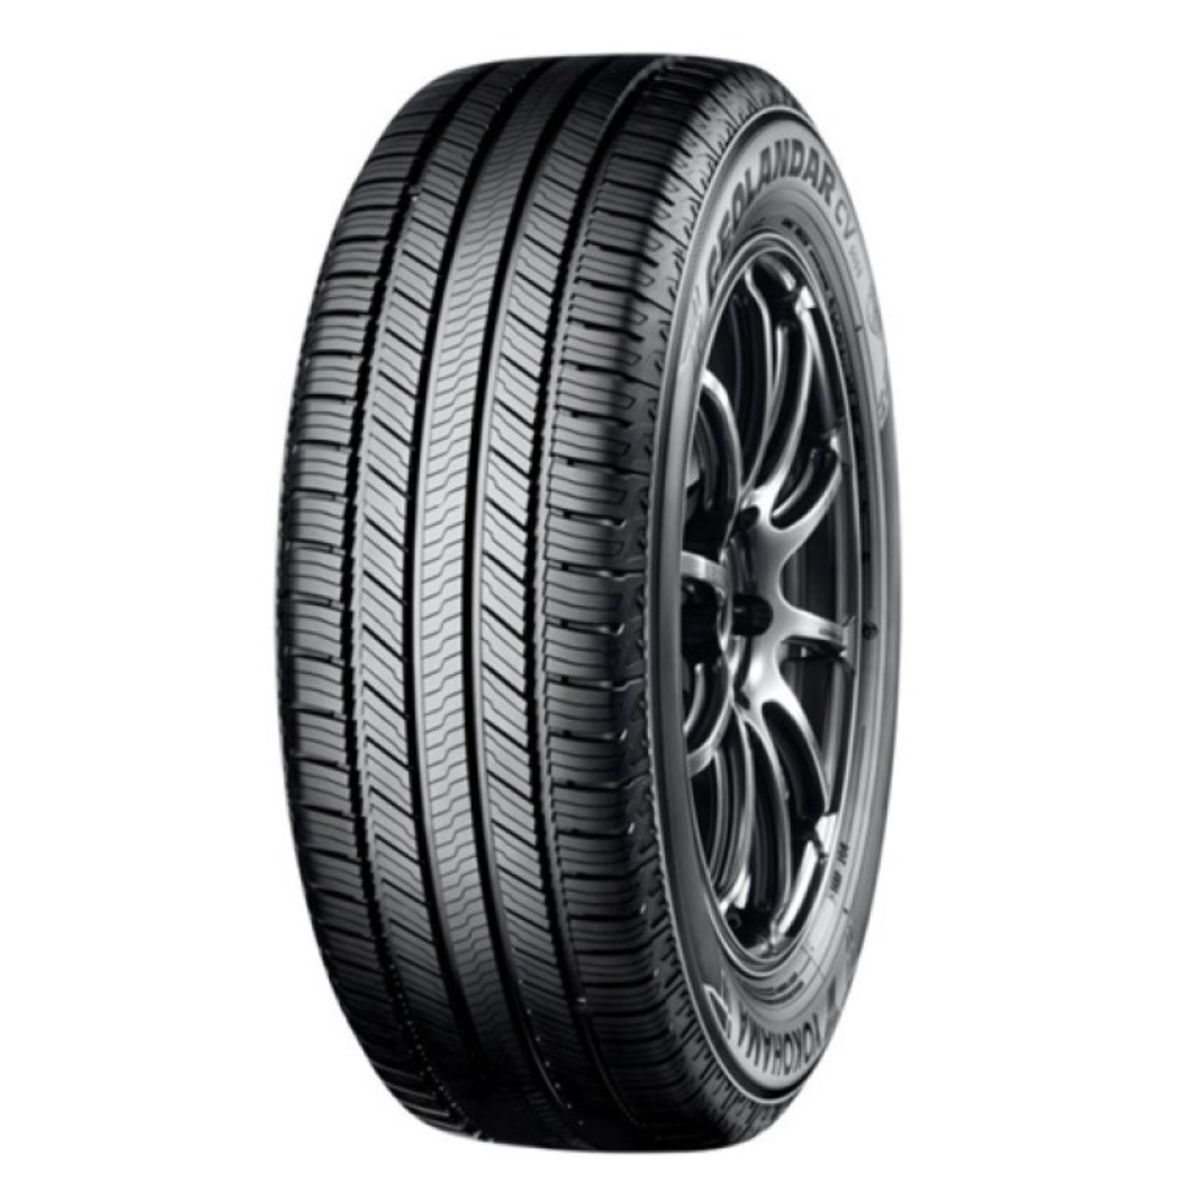 Neumáticos de verano YOKOHAMA Geolandar CV G058 225/50R18 95V